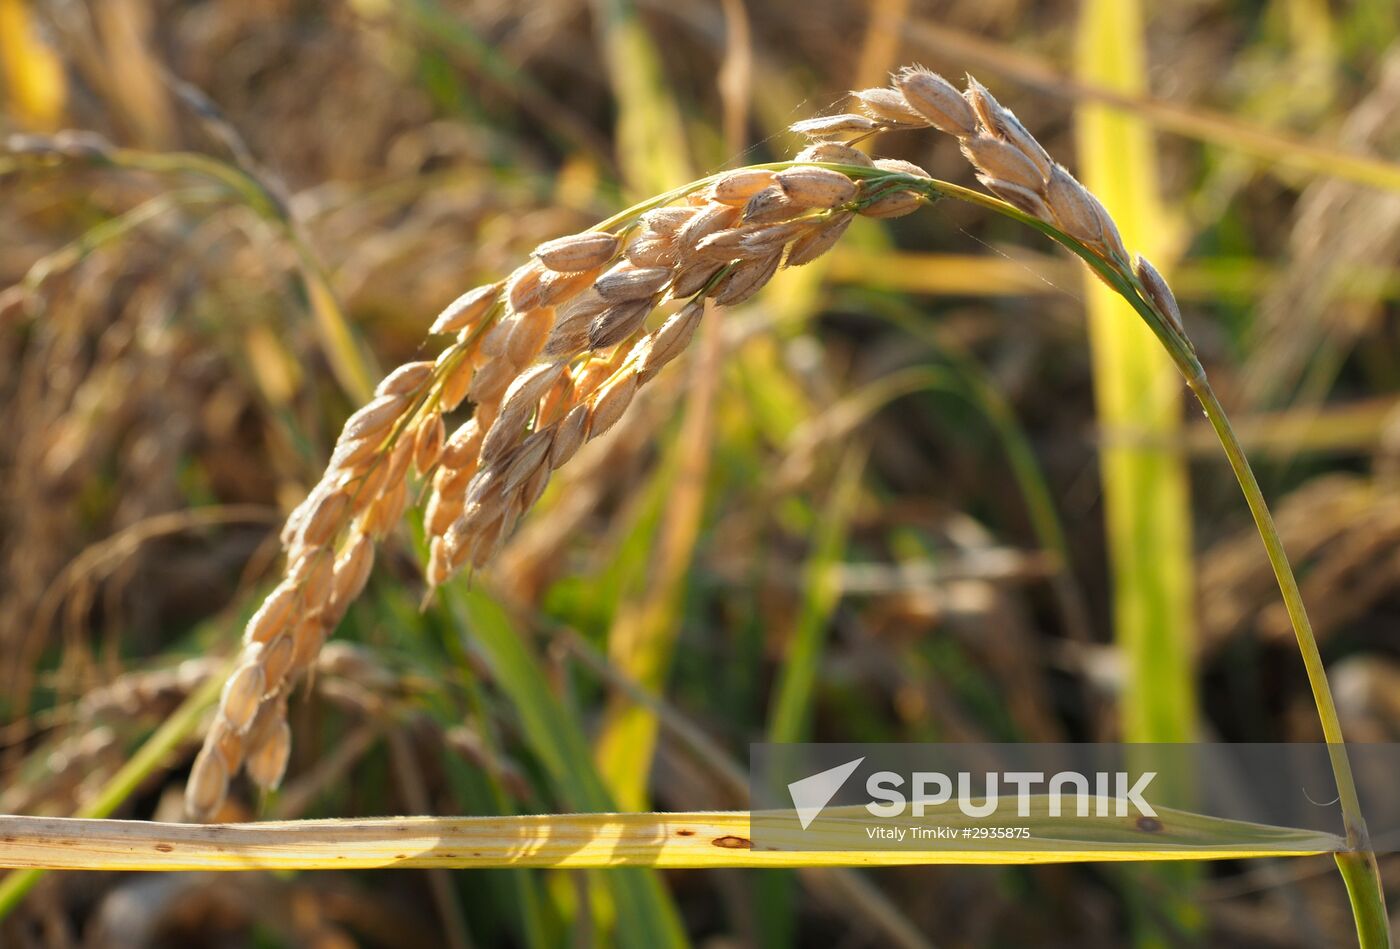 Rice harvest in Krasnodar Territory